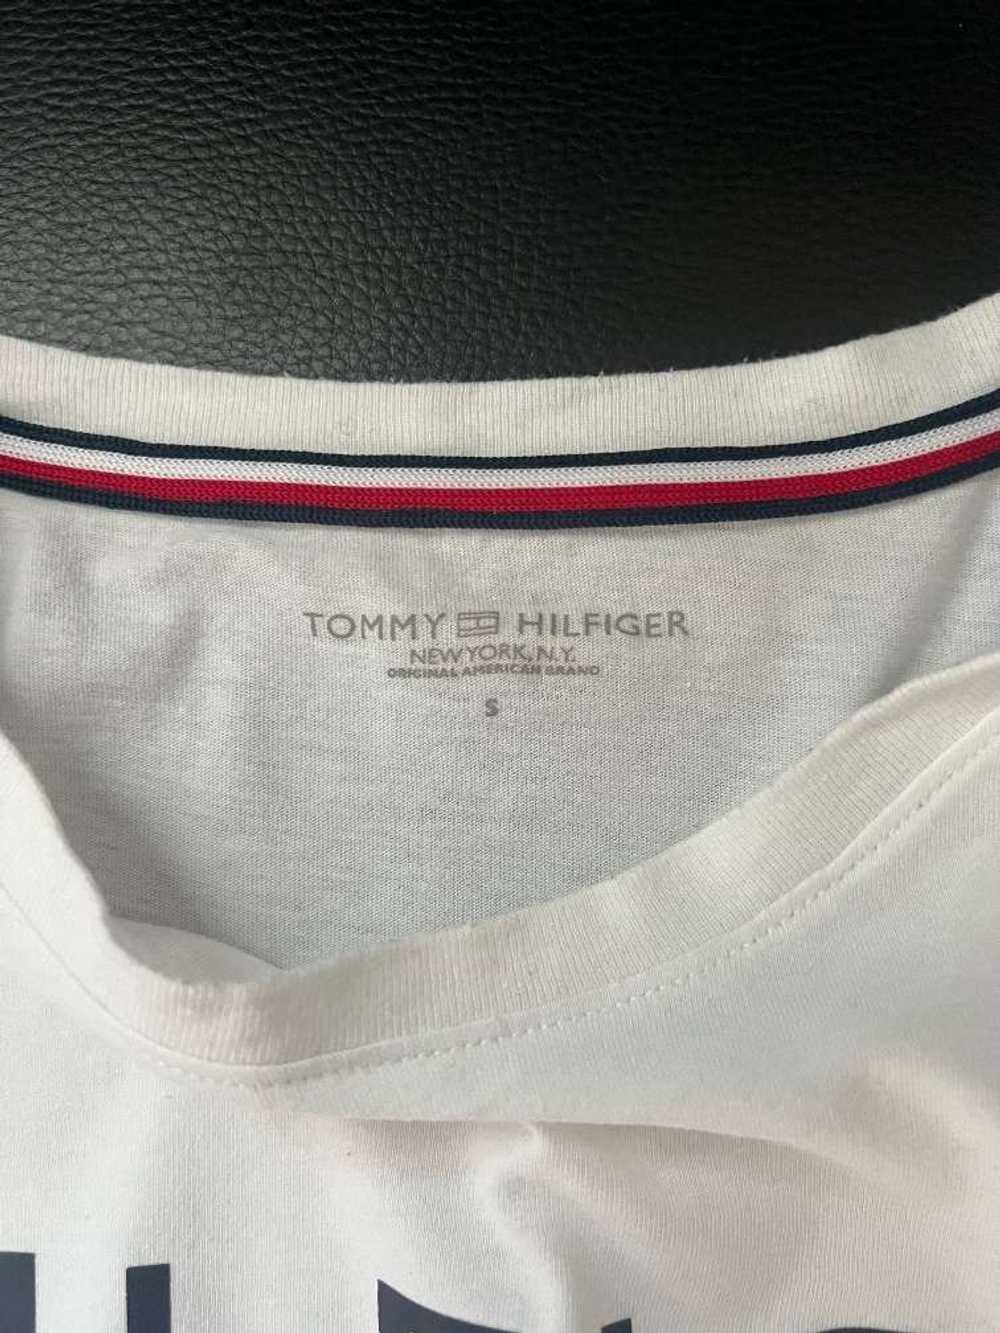 Tommy Hilfiger Tommy Hilfiger men’s T-Shirt. Size… - image 3